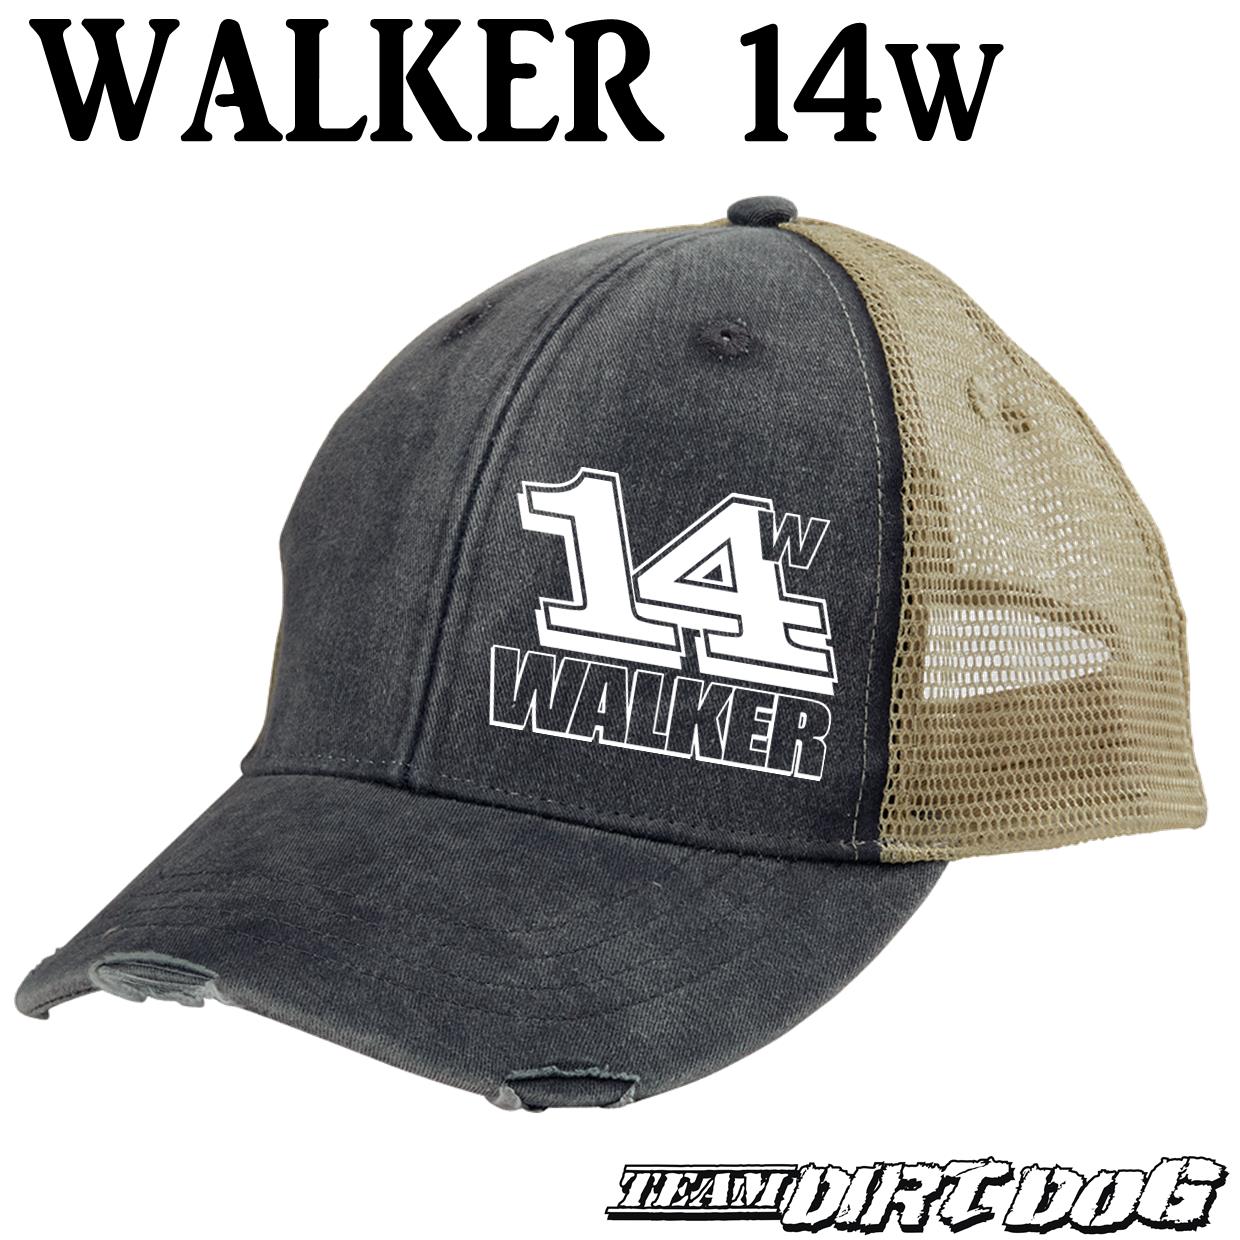 Walker 14w Distressed Trucker Snapback